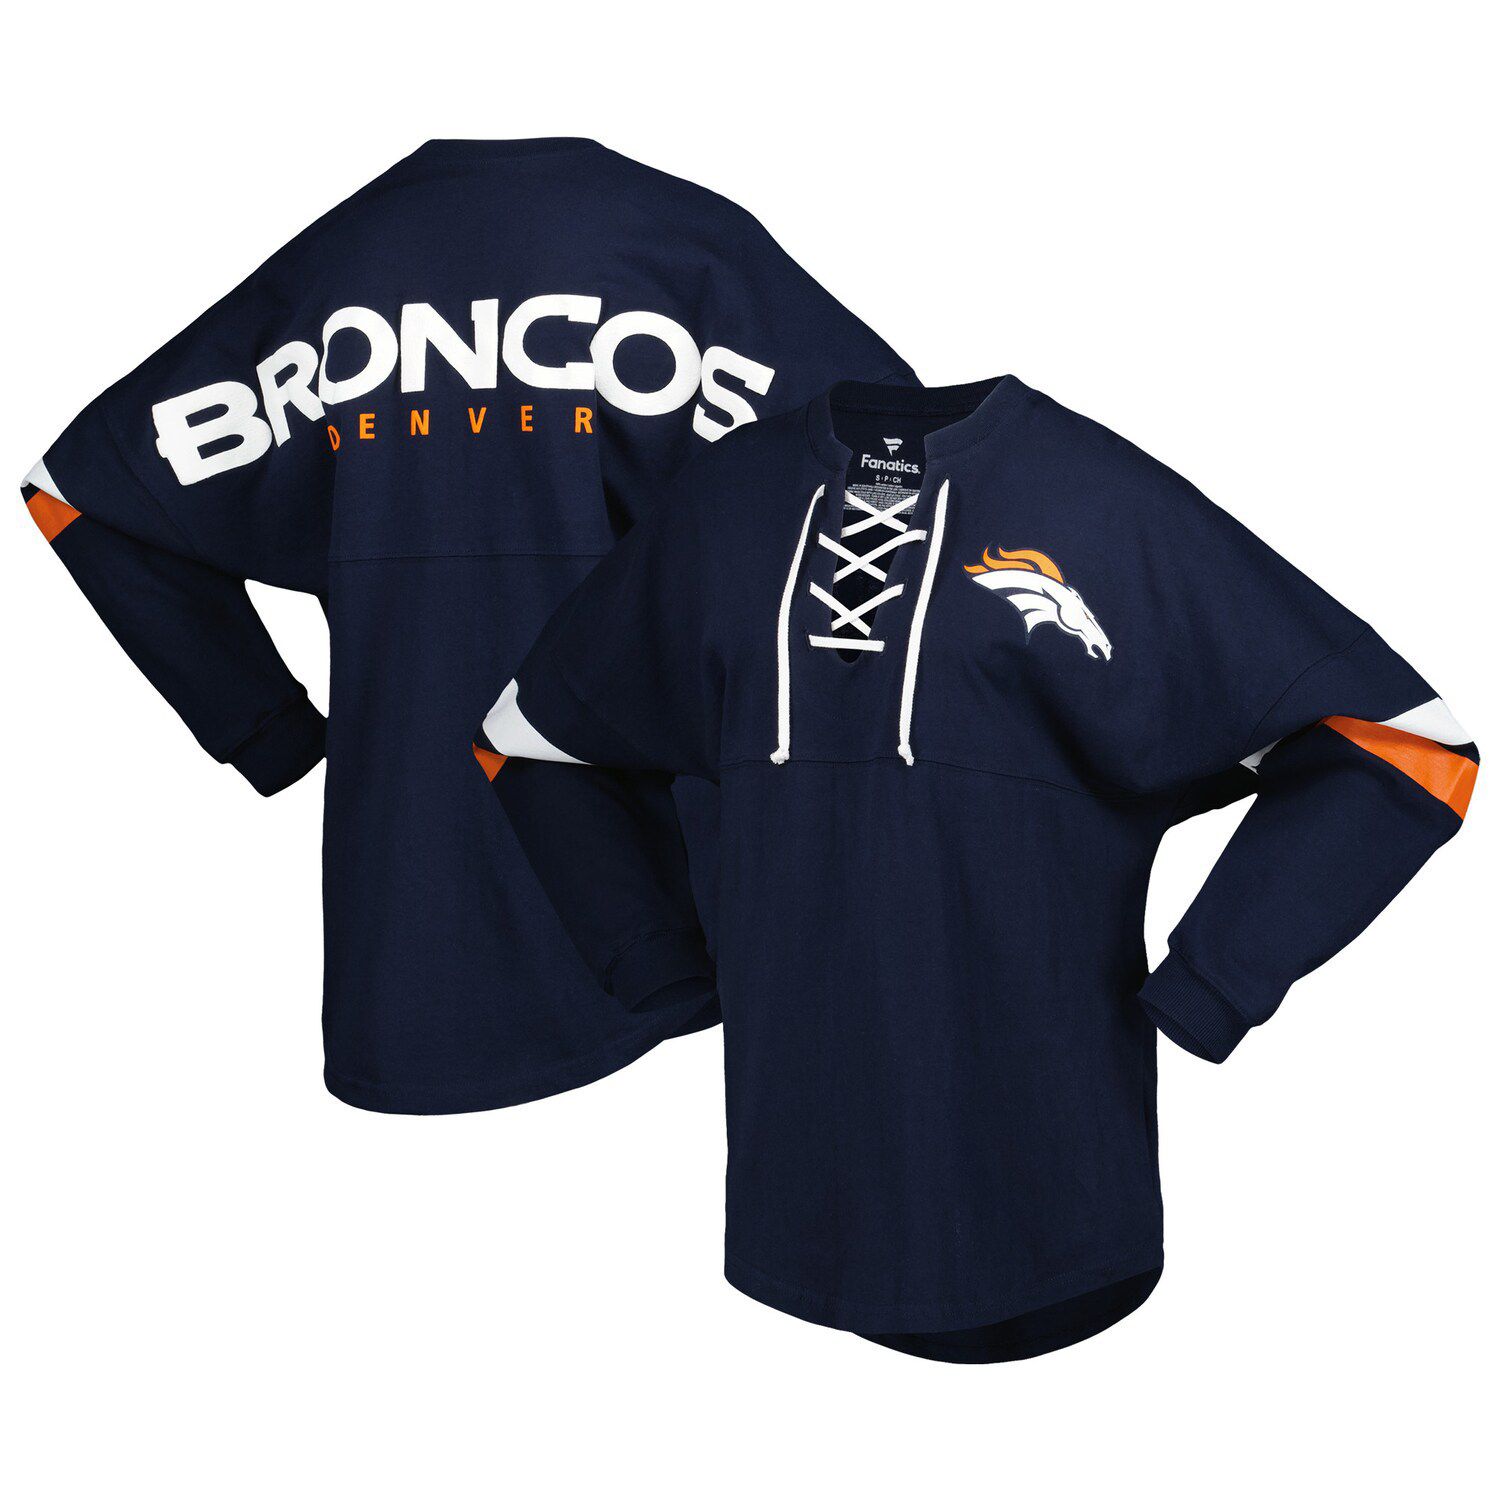 Broncos fan apparel jerseys